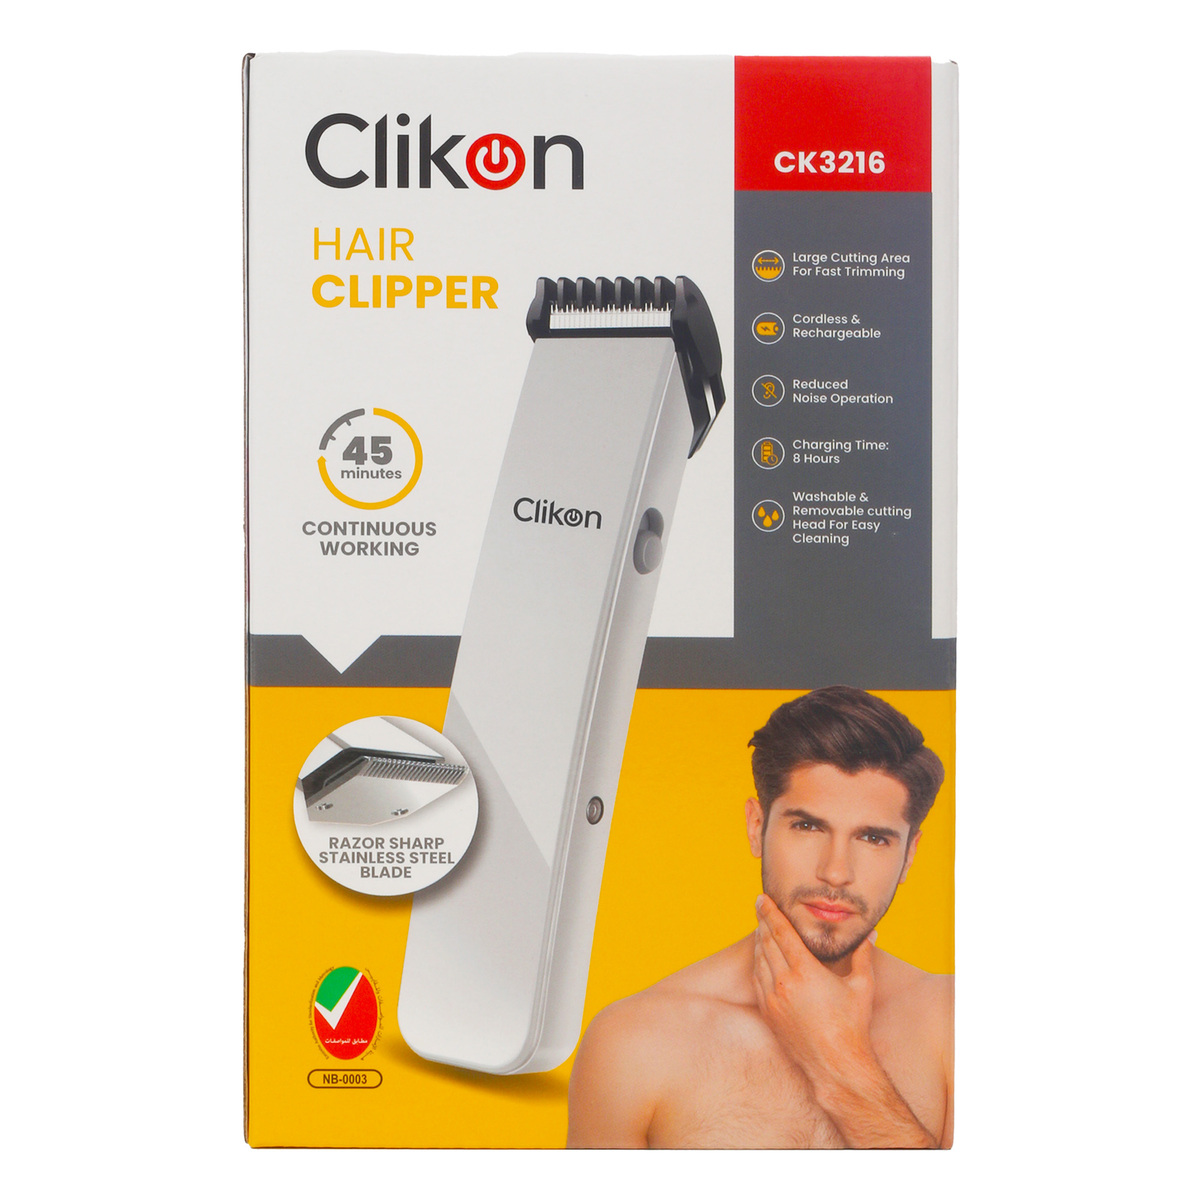 Clikon Hair Clipper CK3216